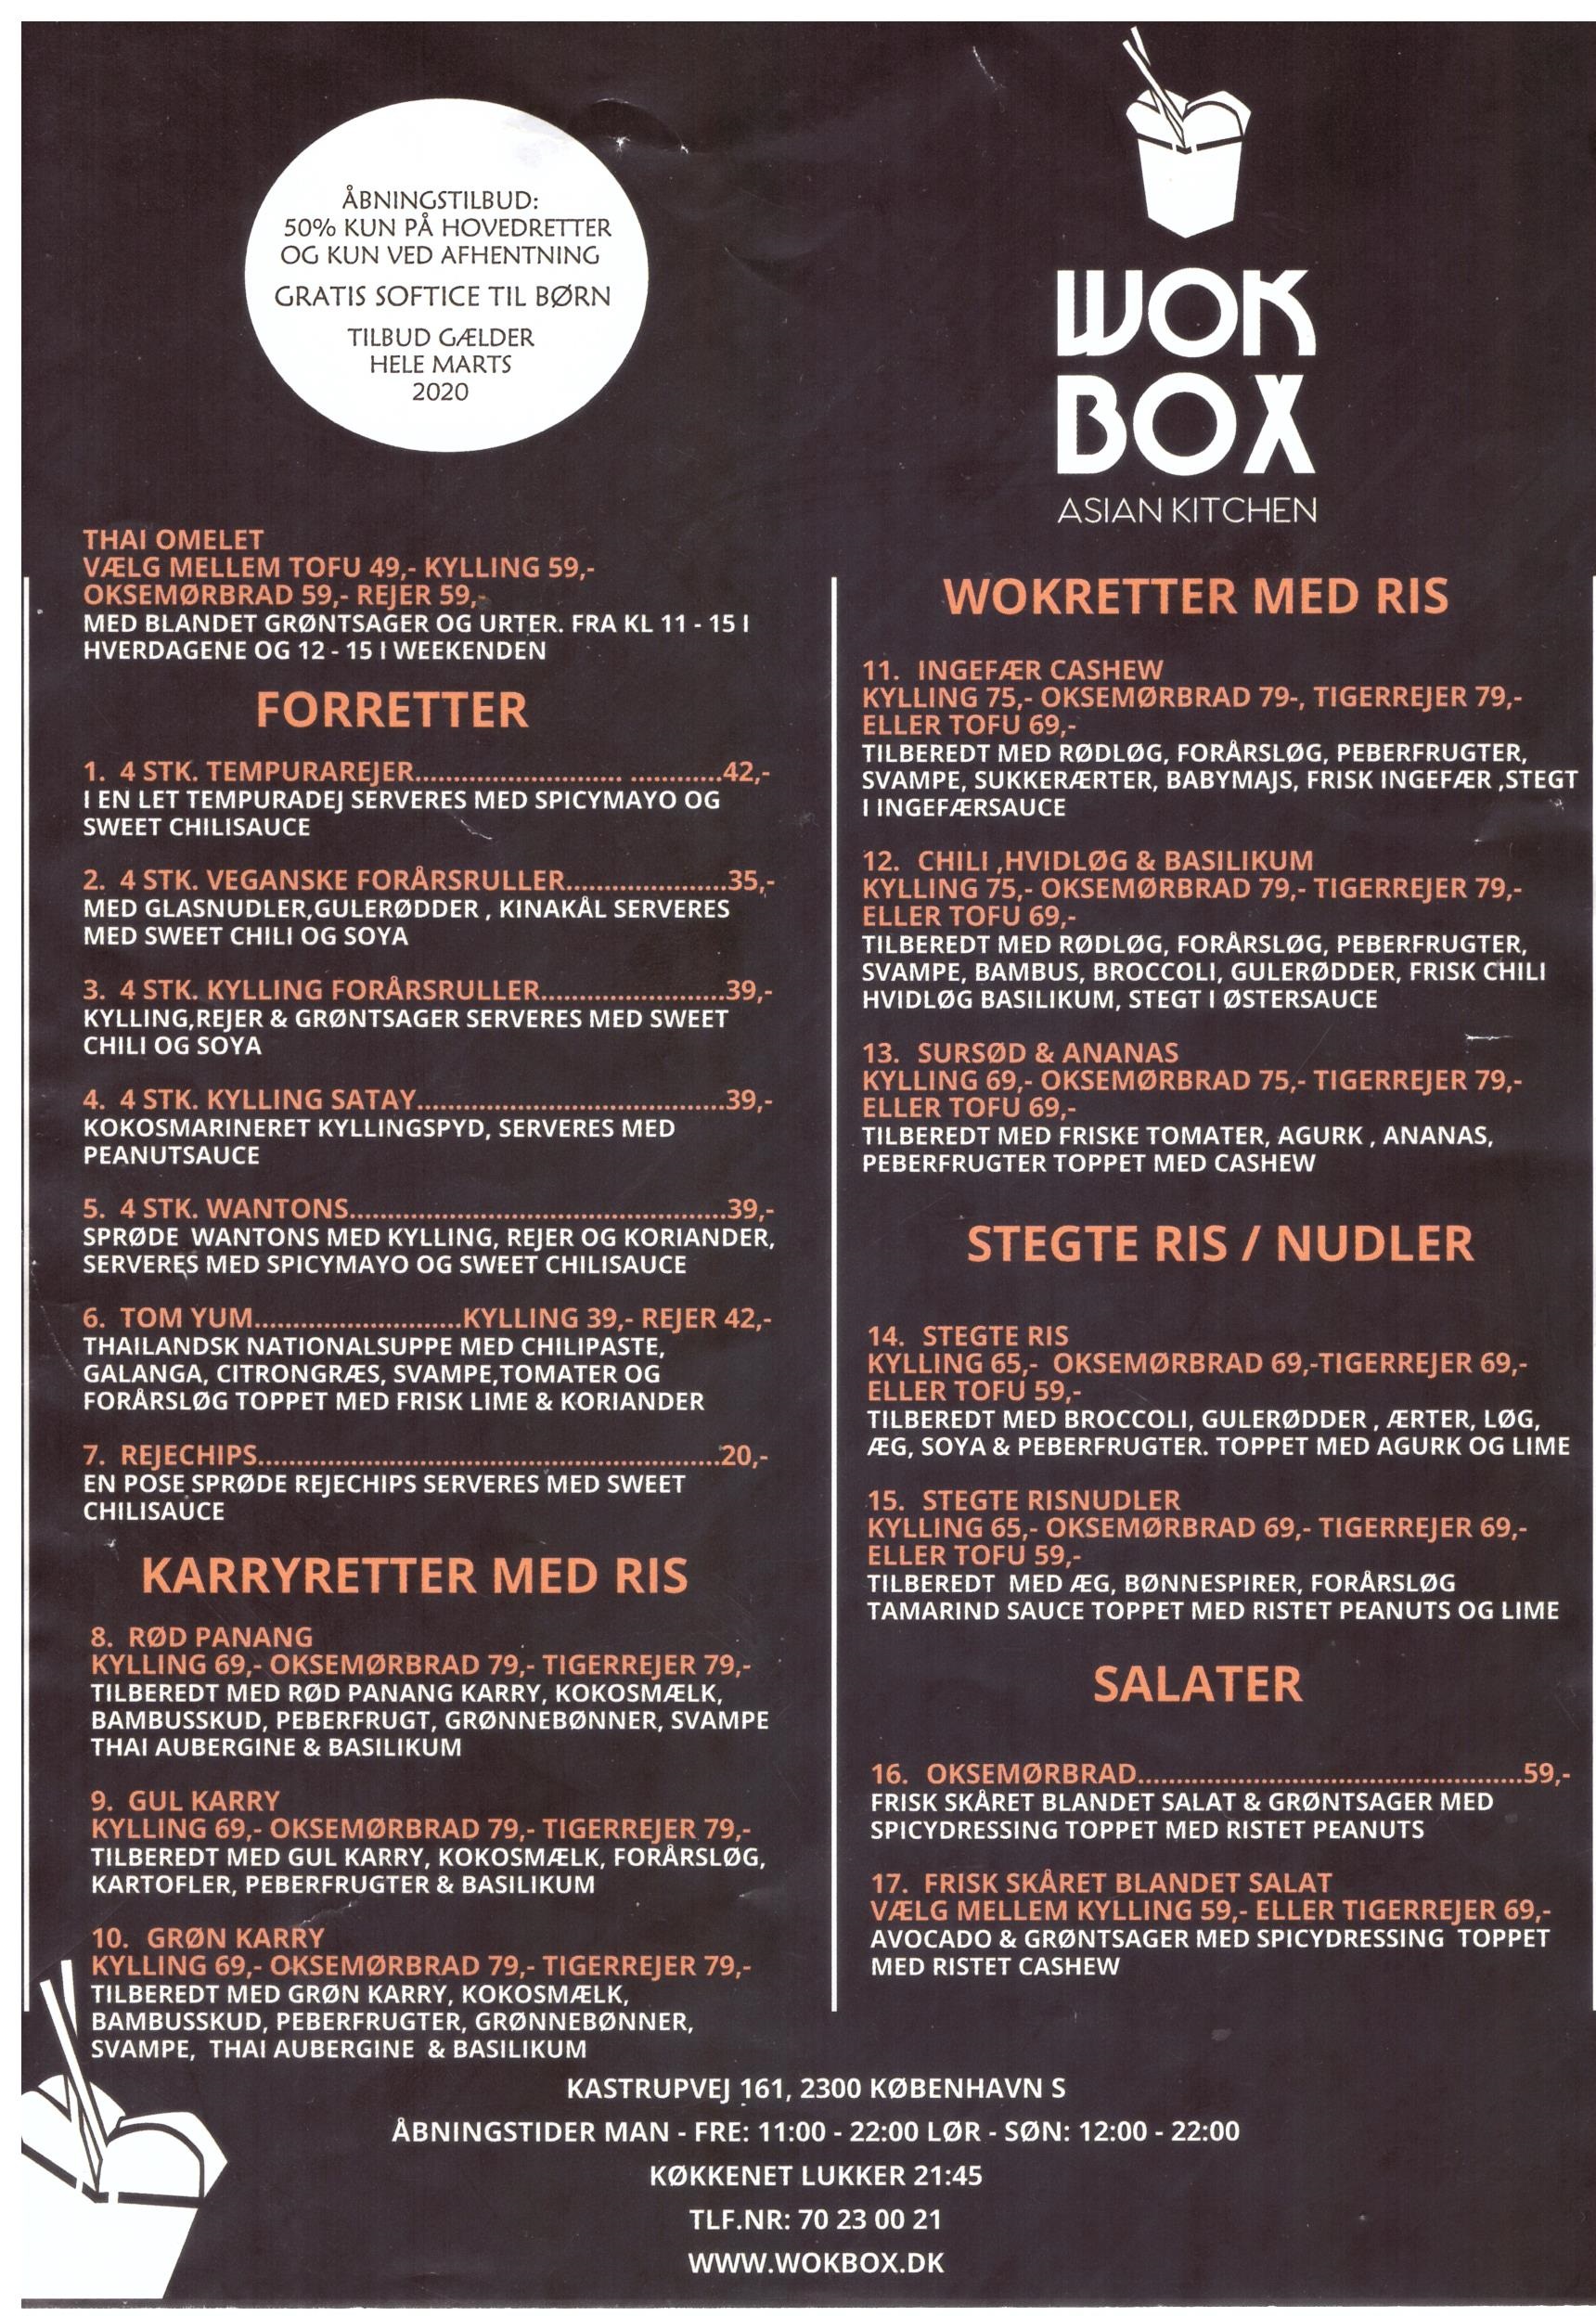 Wok box – Kastrupvej 161 – 2300 København S.